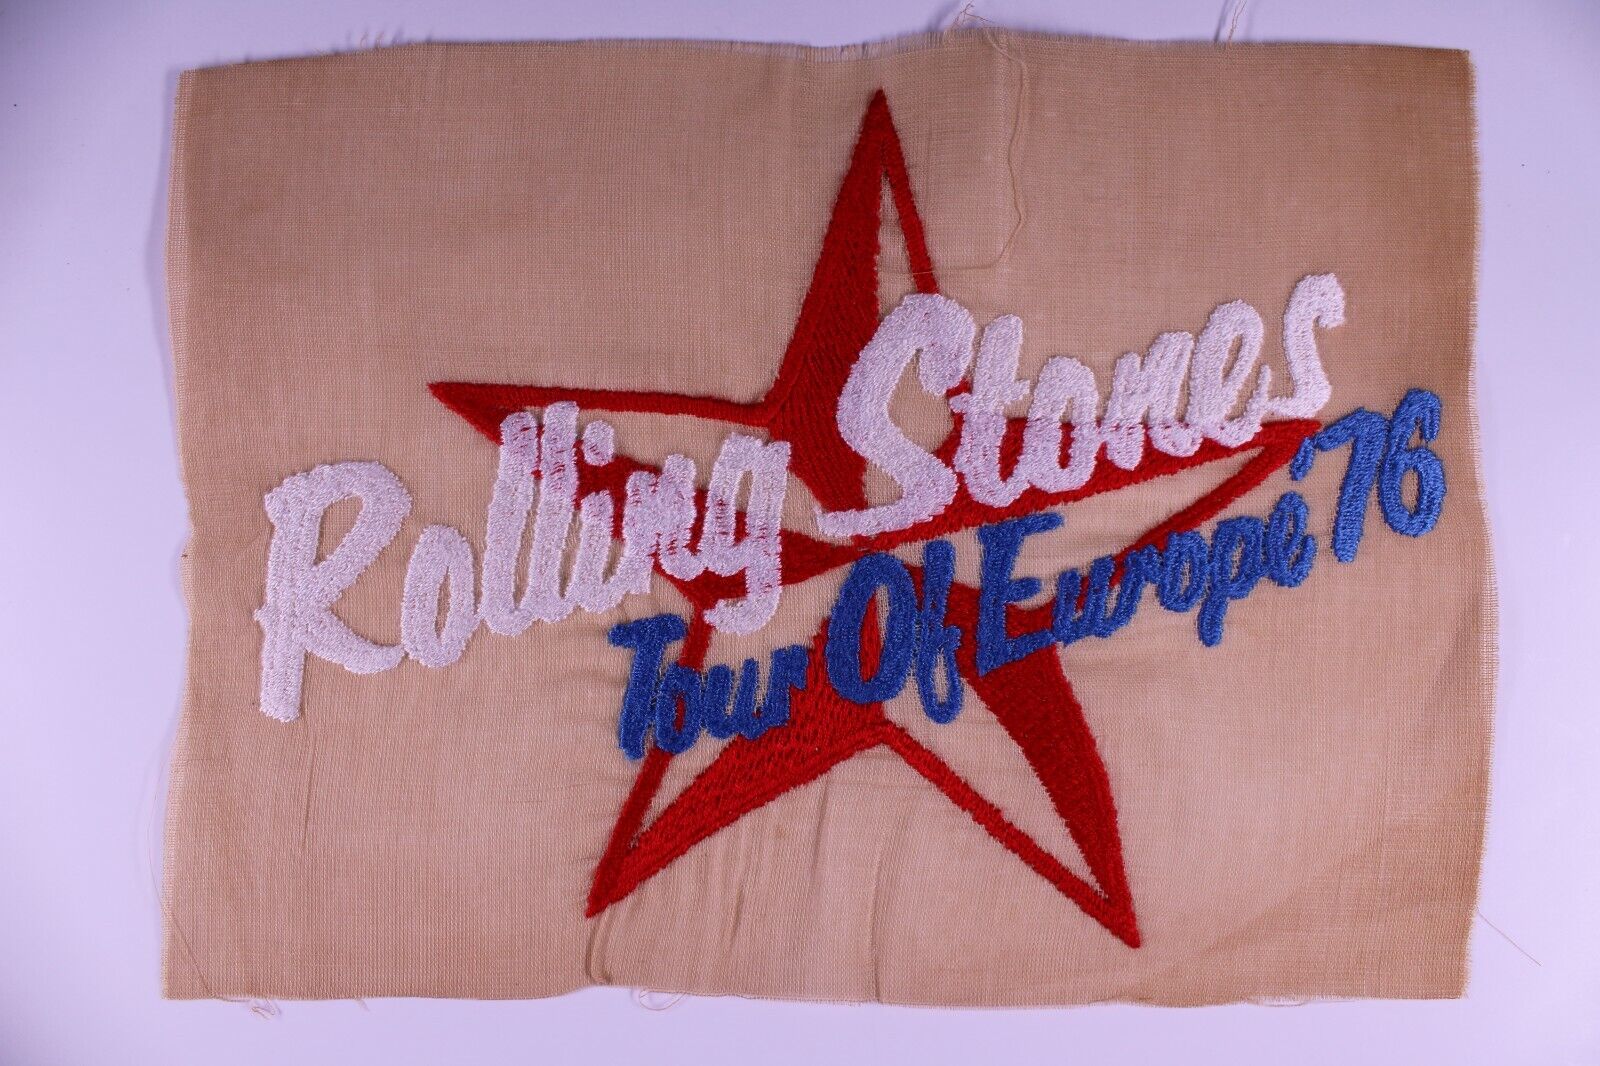 Rolling Stones Artwork Vintage Original Embroidered Crew Shirt Sampler 1976